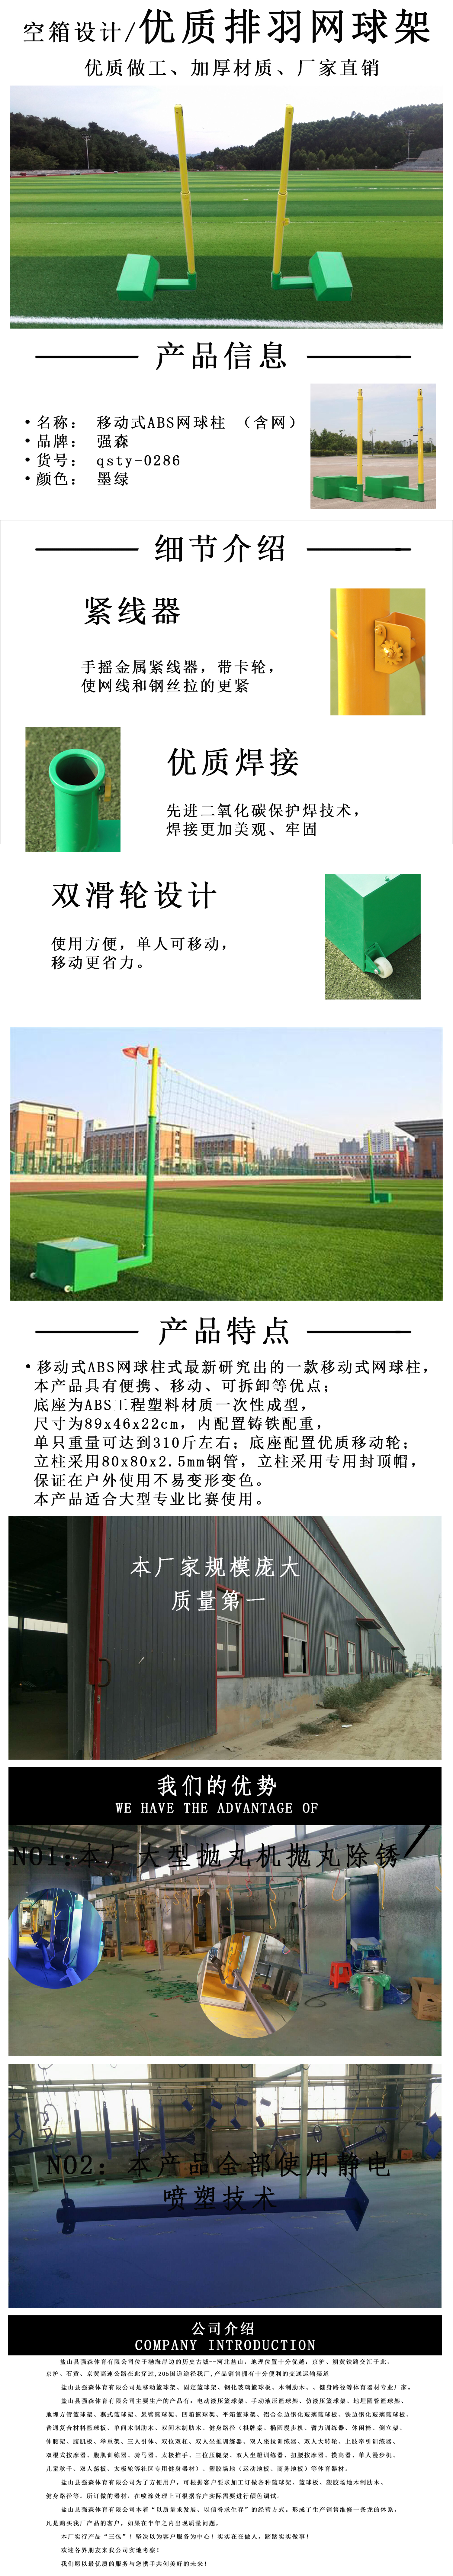 足球网体育器材厂家销售批发公应商图片